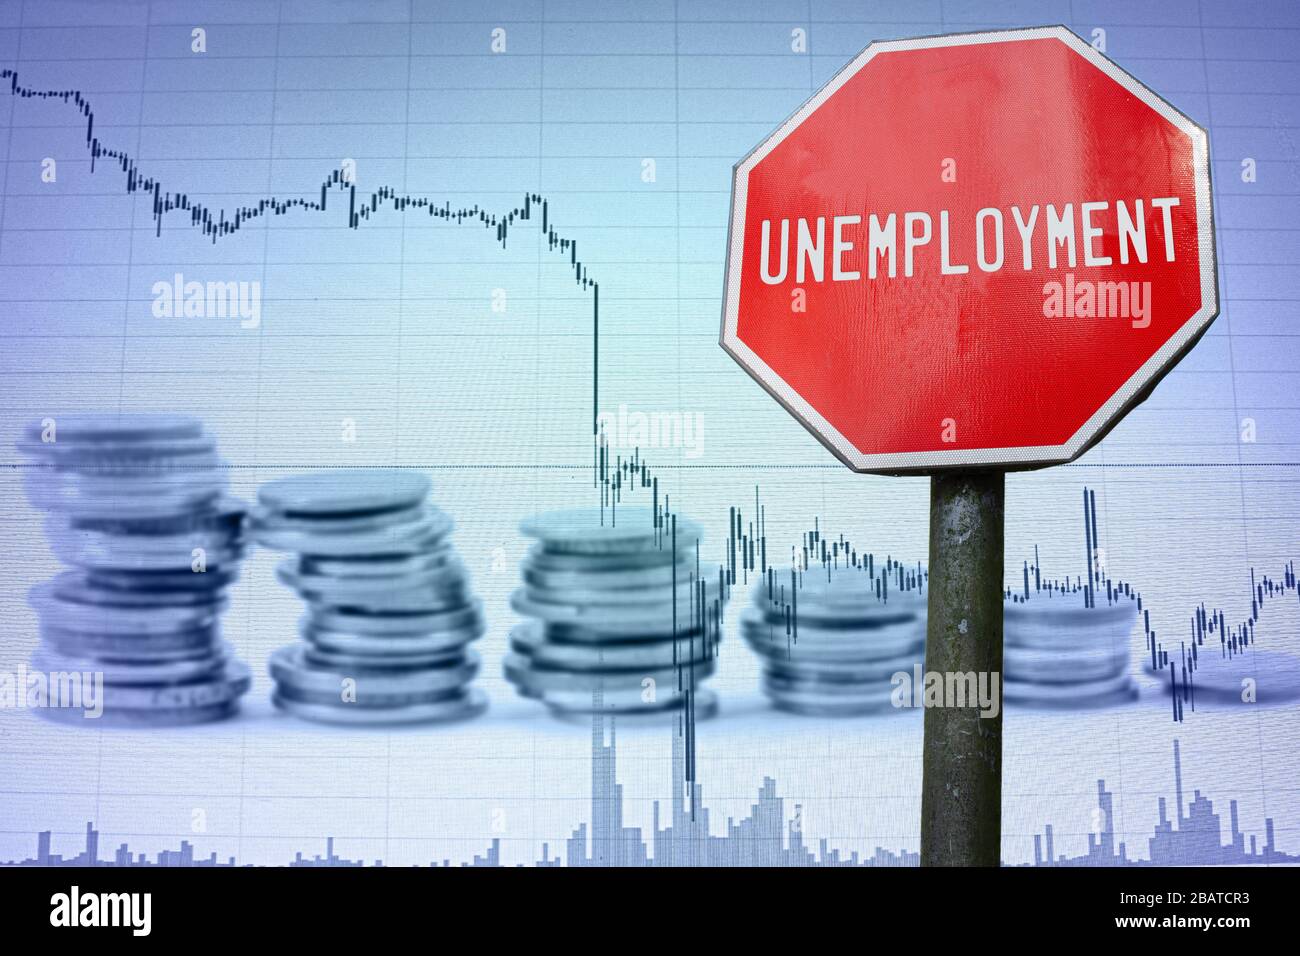 Arbeitslosenquote auf wirtschaftlichem Hintergrund - Diagramm und Münzen. Finanzunfall in der Weltwirtschaft wegen Coronavirus. Weltwirtschaftskrise, Rezession Stockfoto